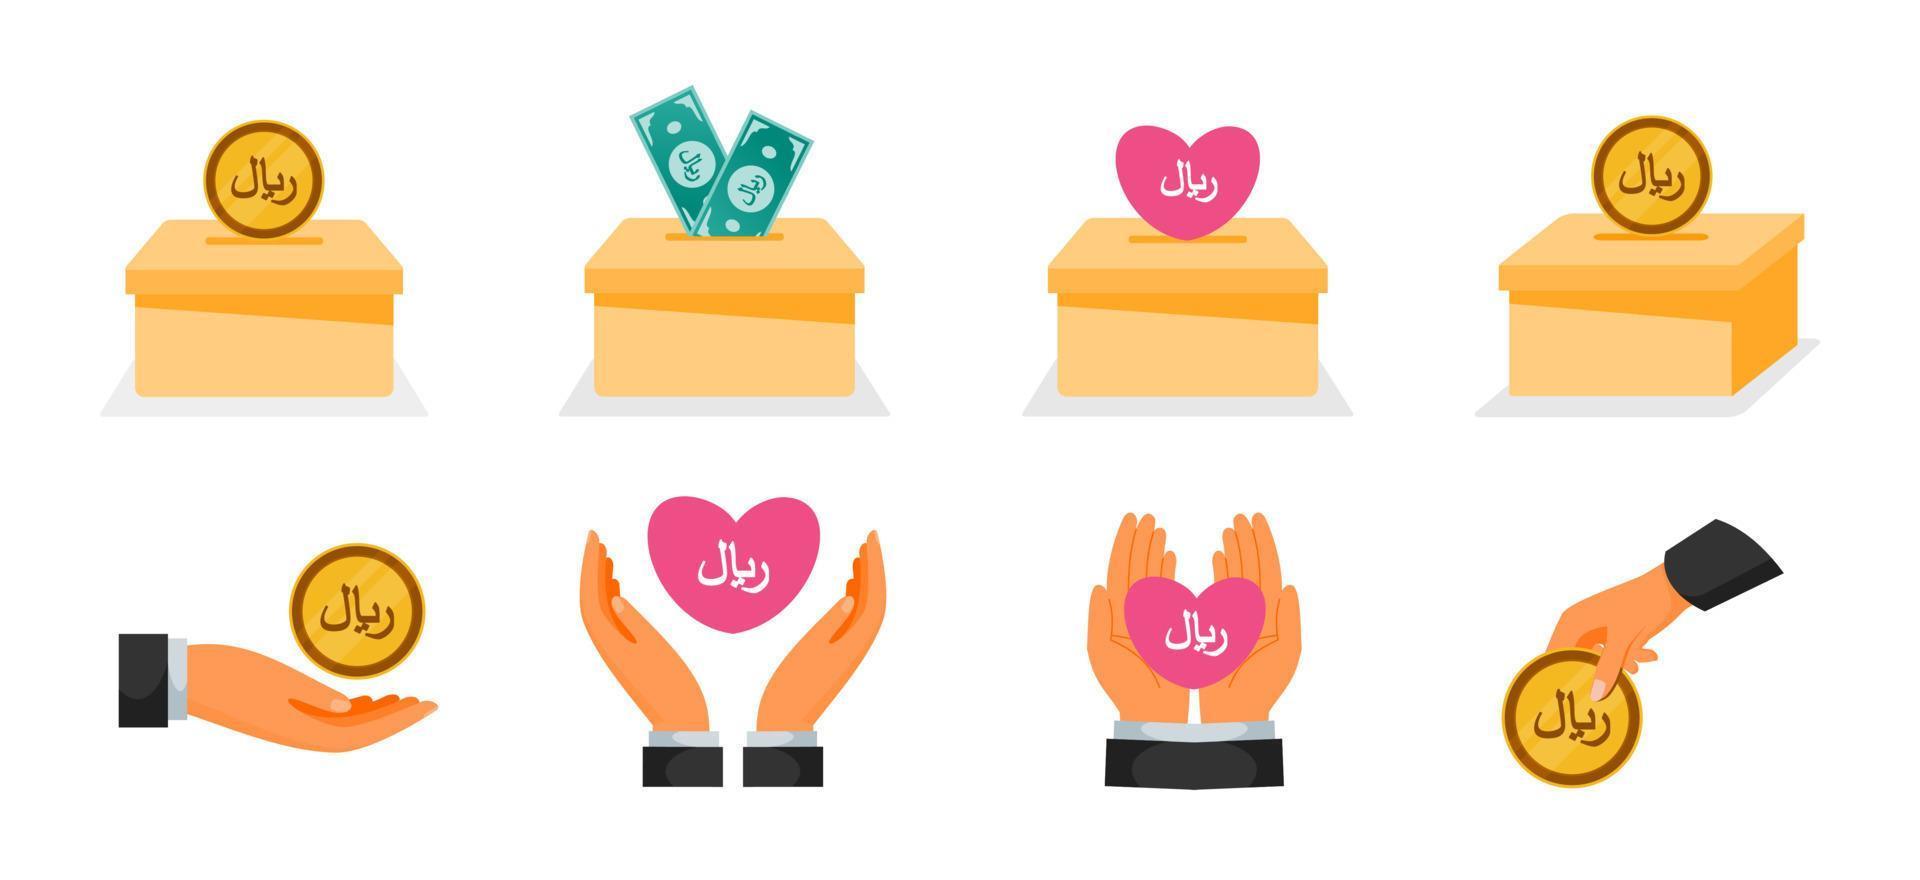 Donation Using Saudi Riyal Money Icons vector